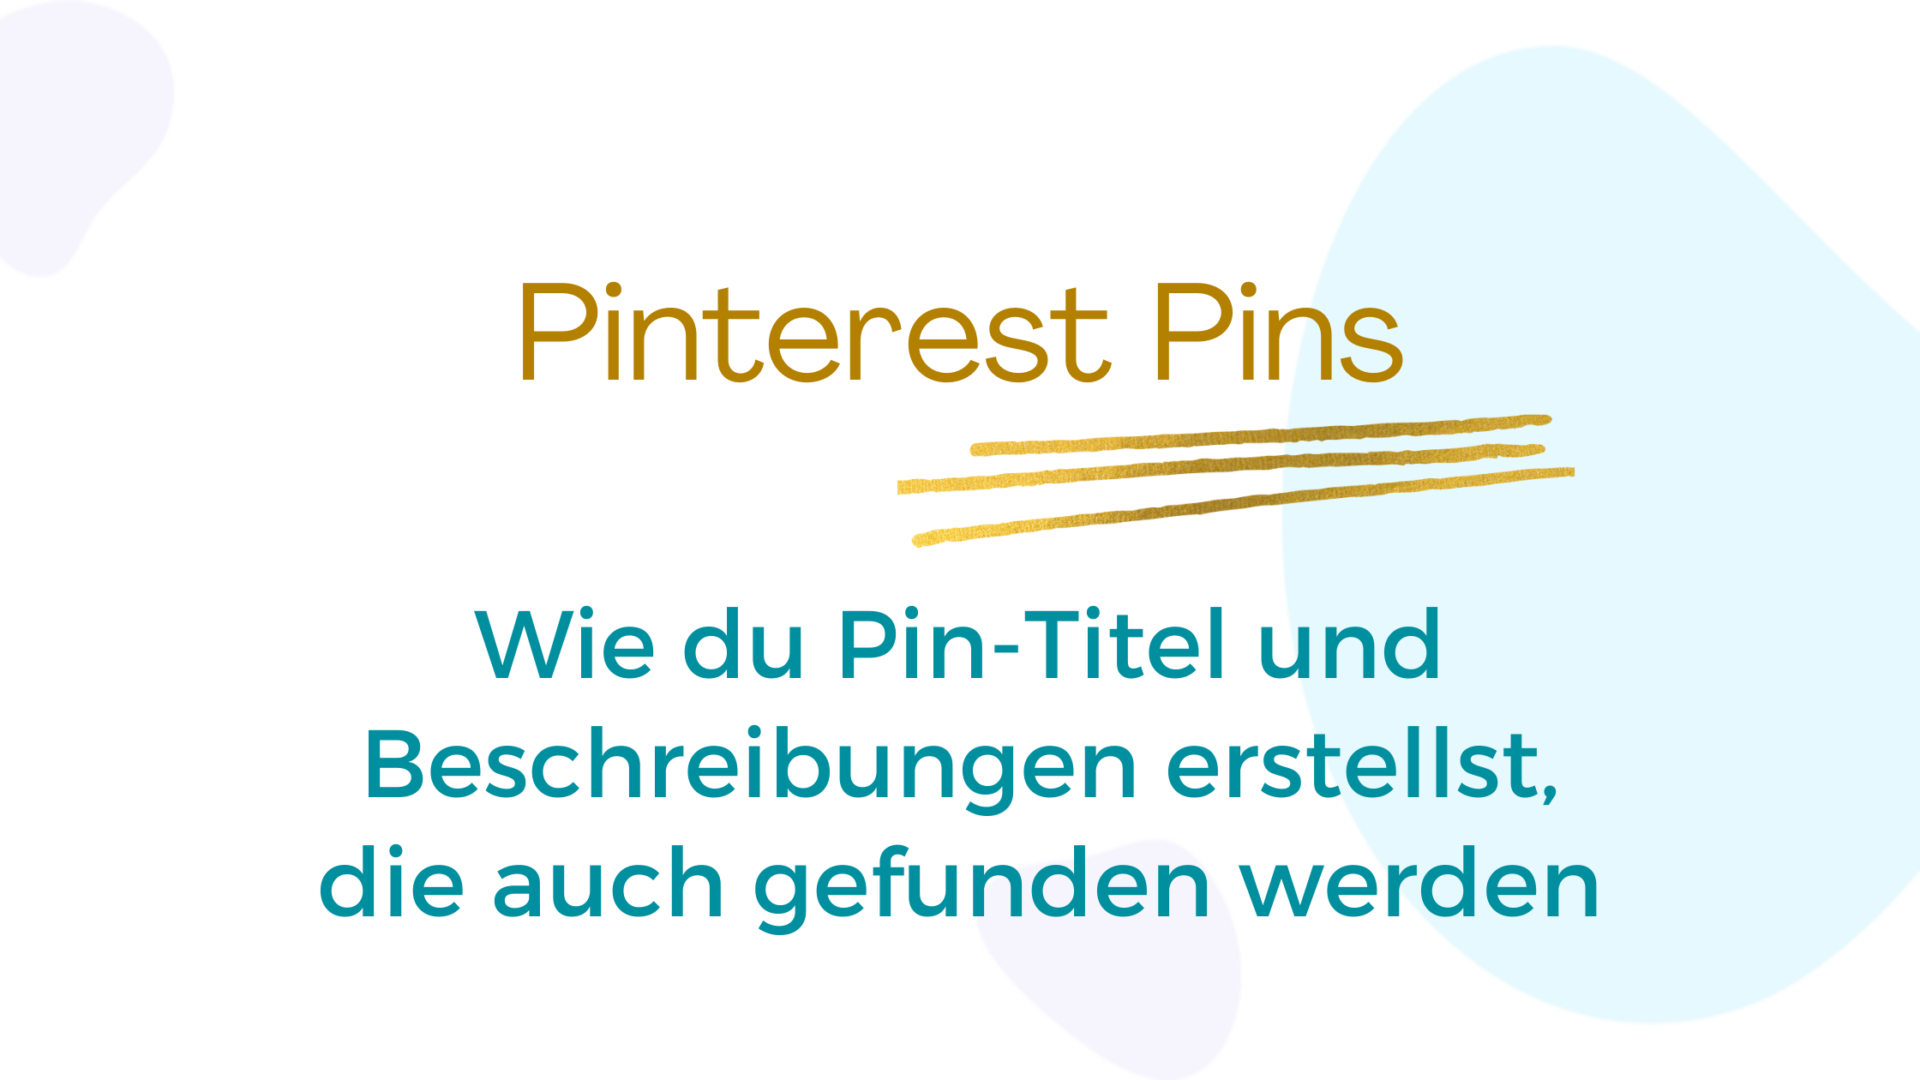 Keyword-optimierte Pinterest Pin-Beschreibung und Pin-Titel